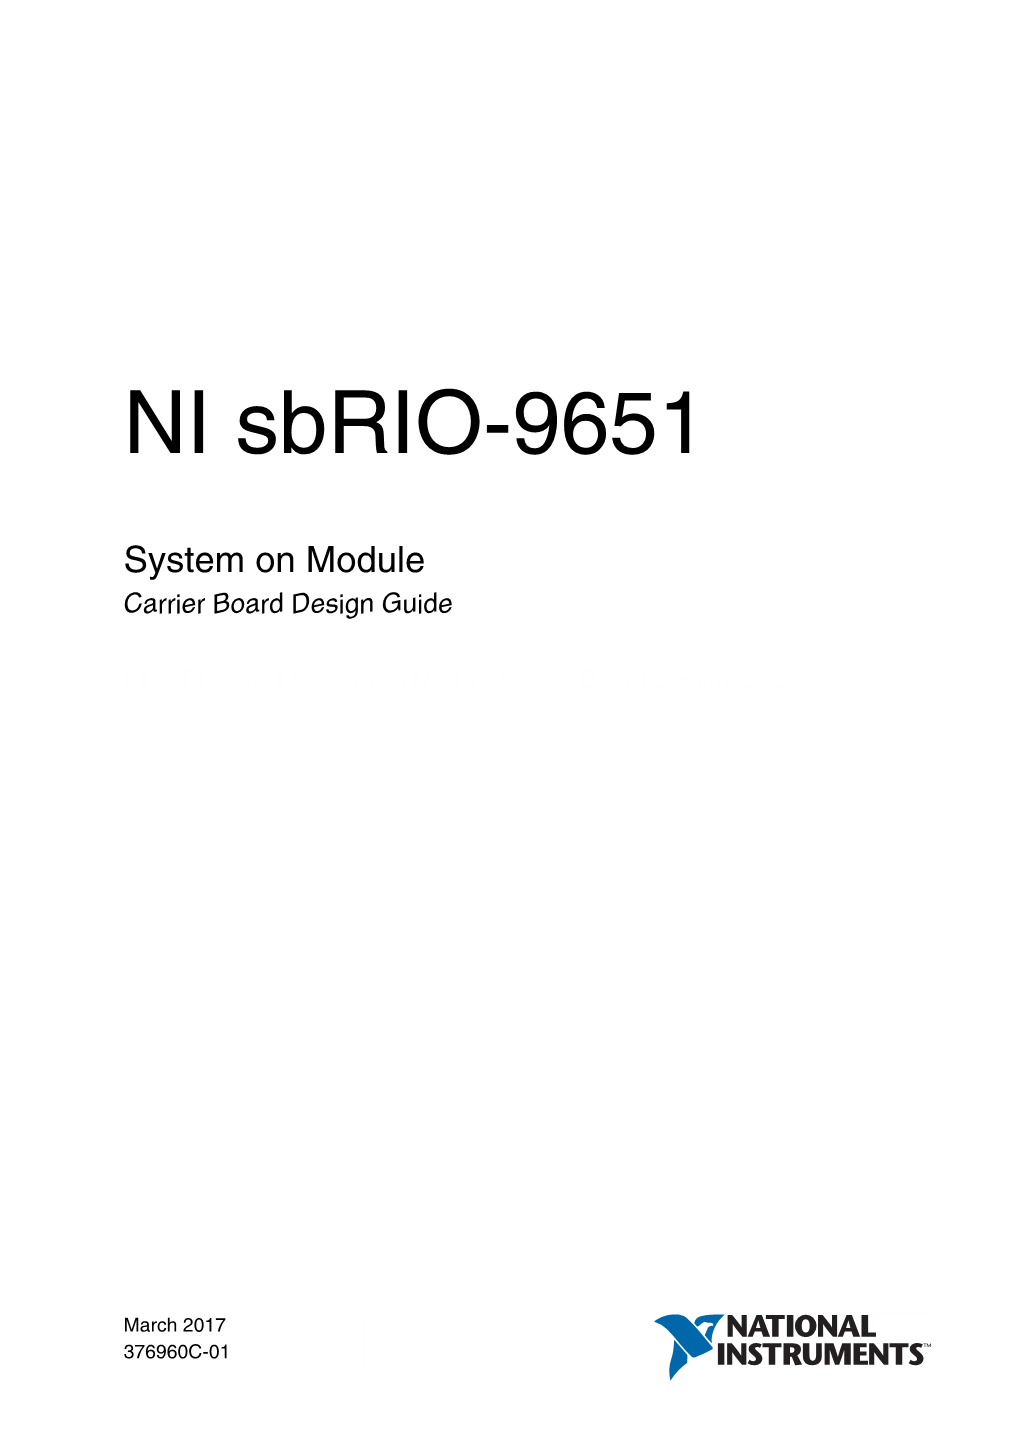 NI Sbrio-9651 System on Module Carrier Board Design Guide